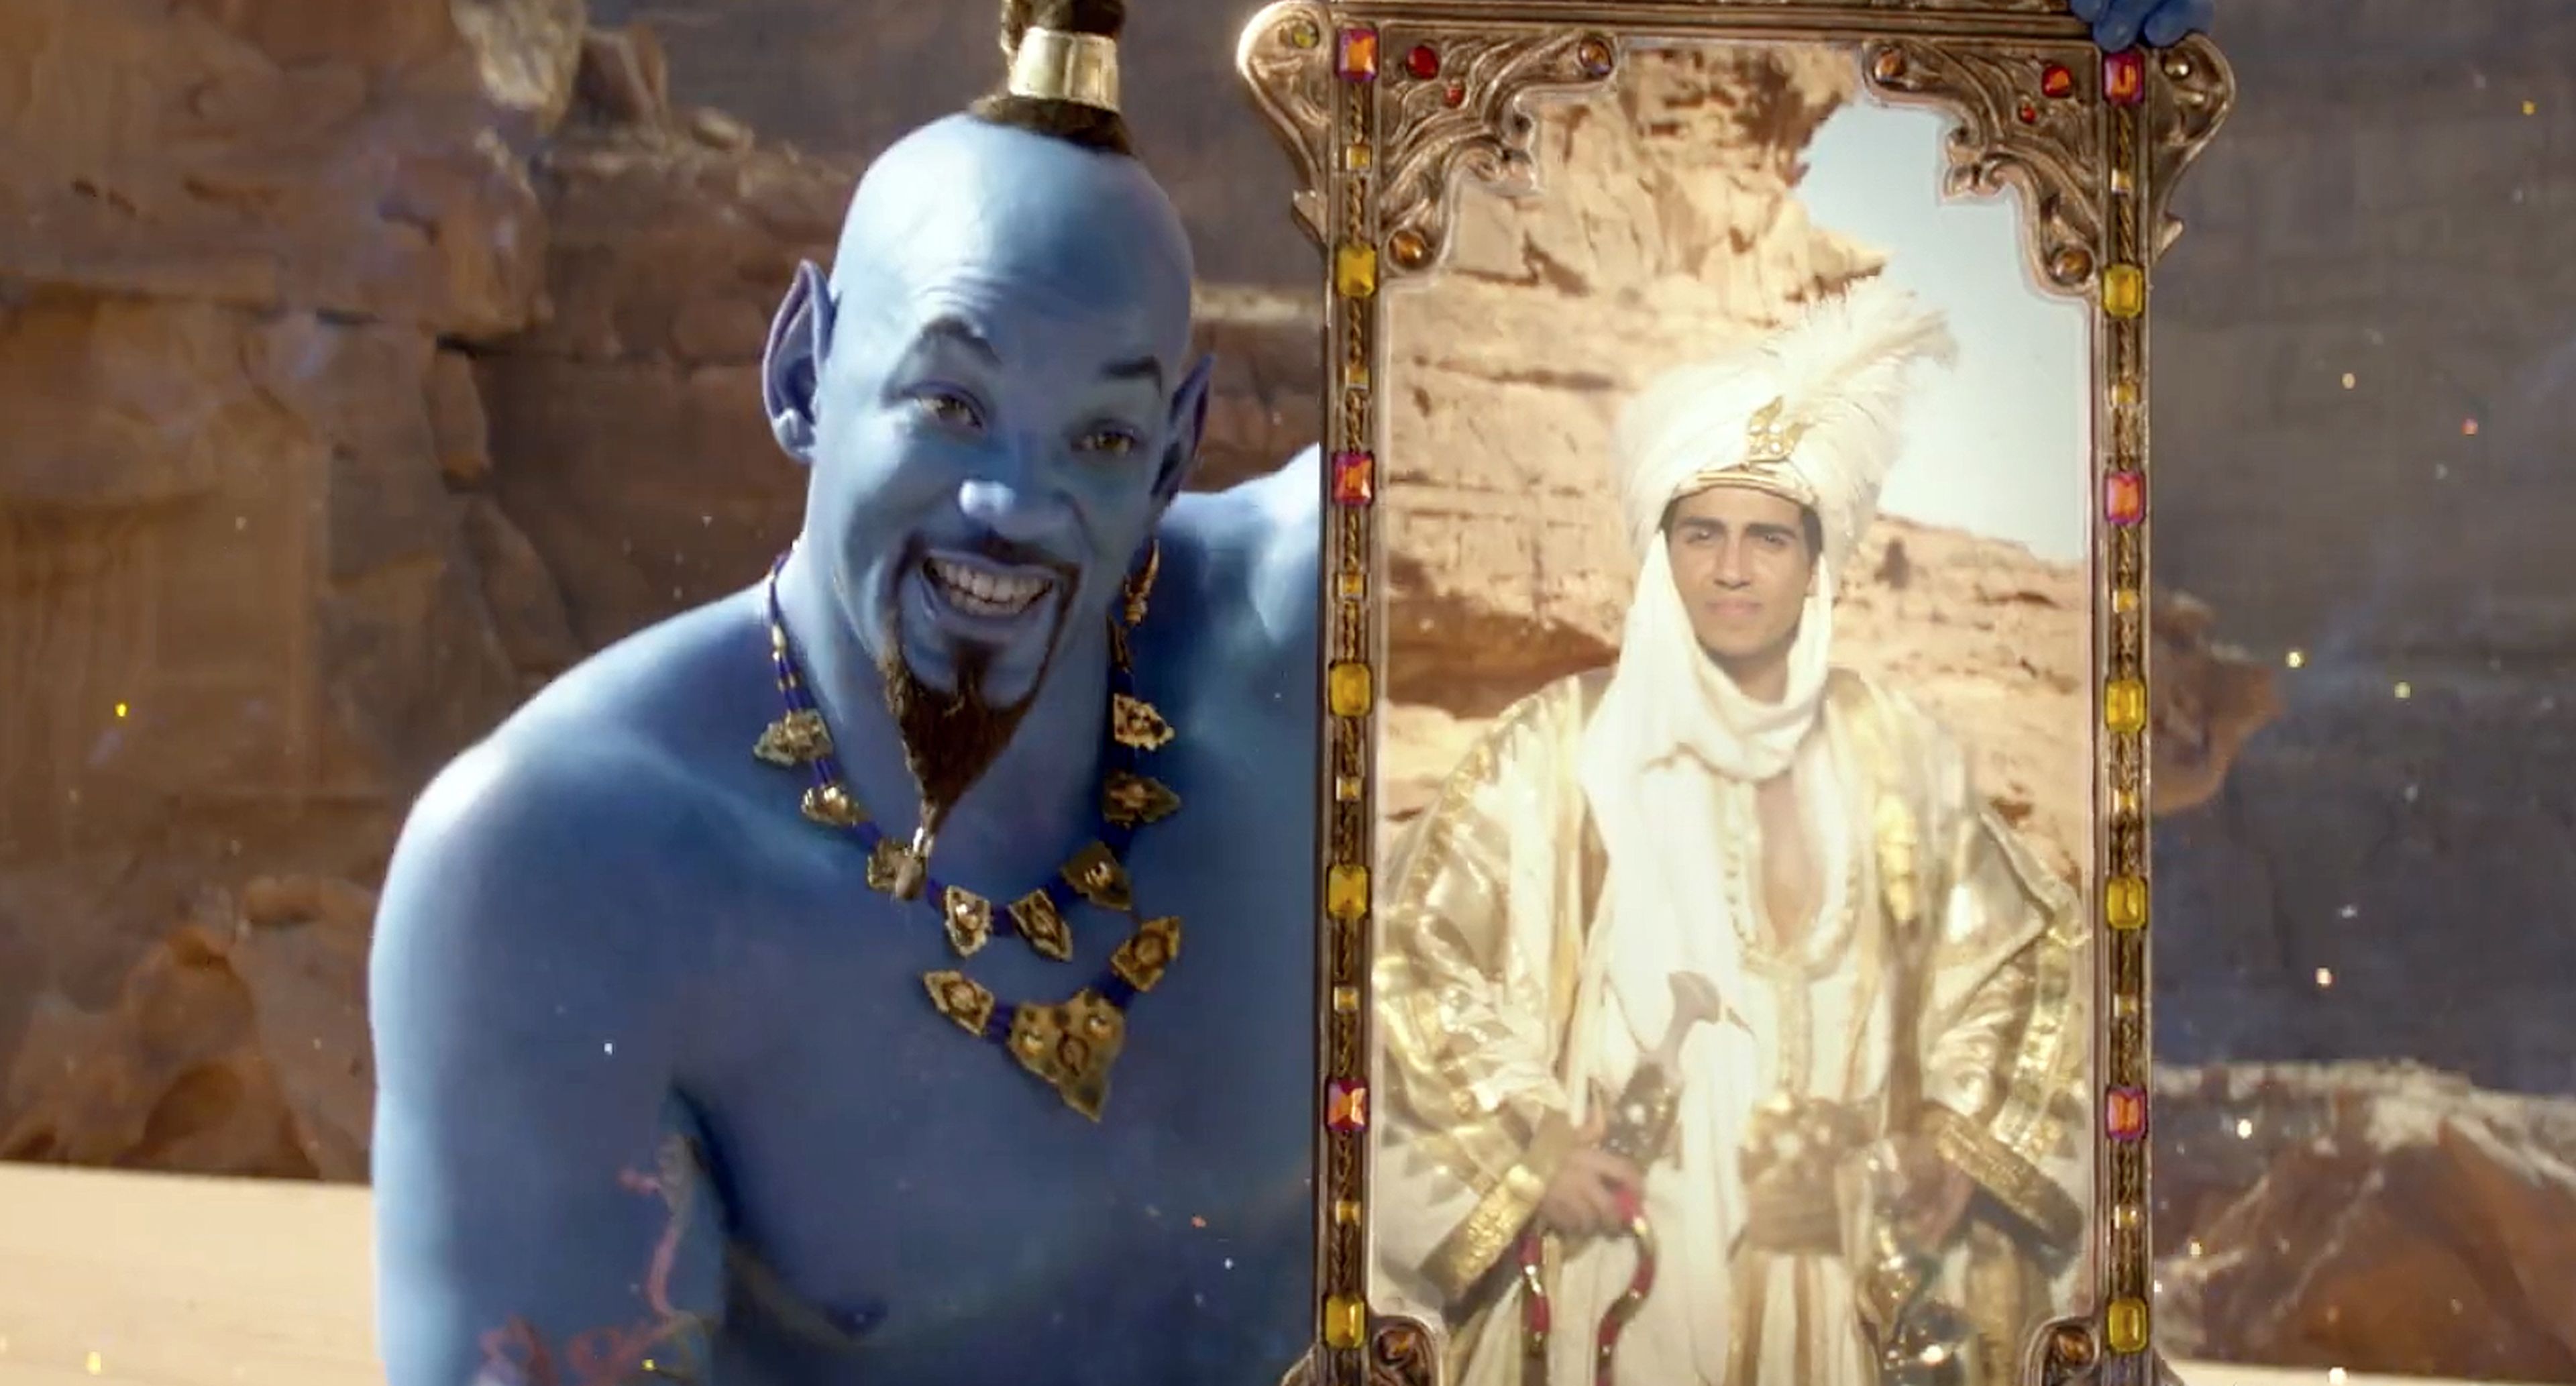 Aladdin - Trailer en español del remake